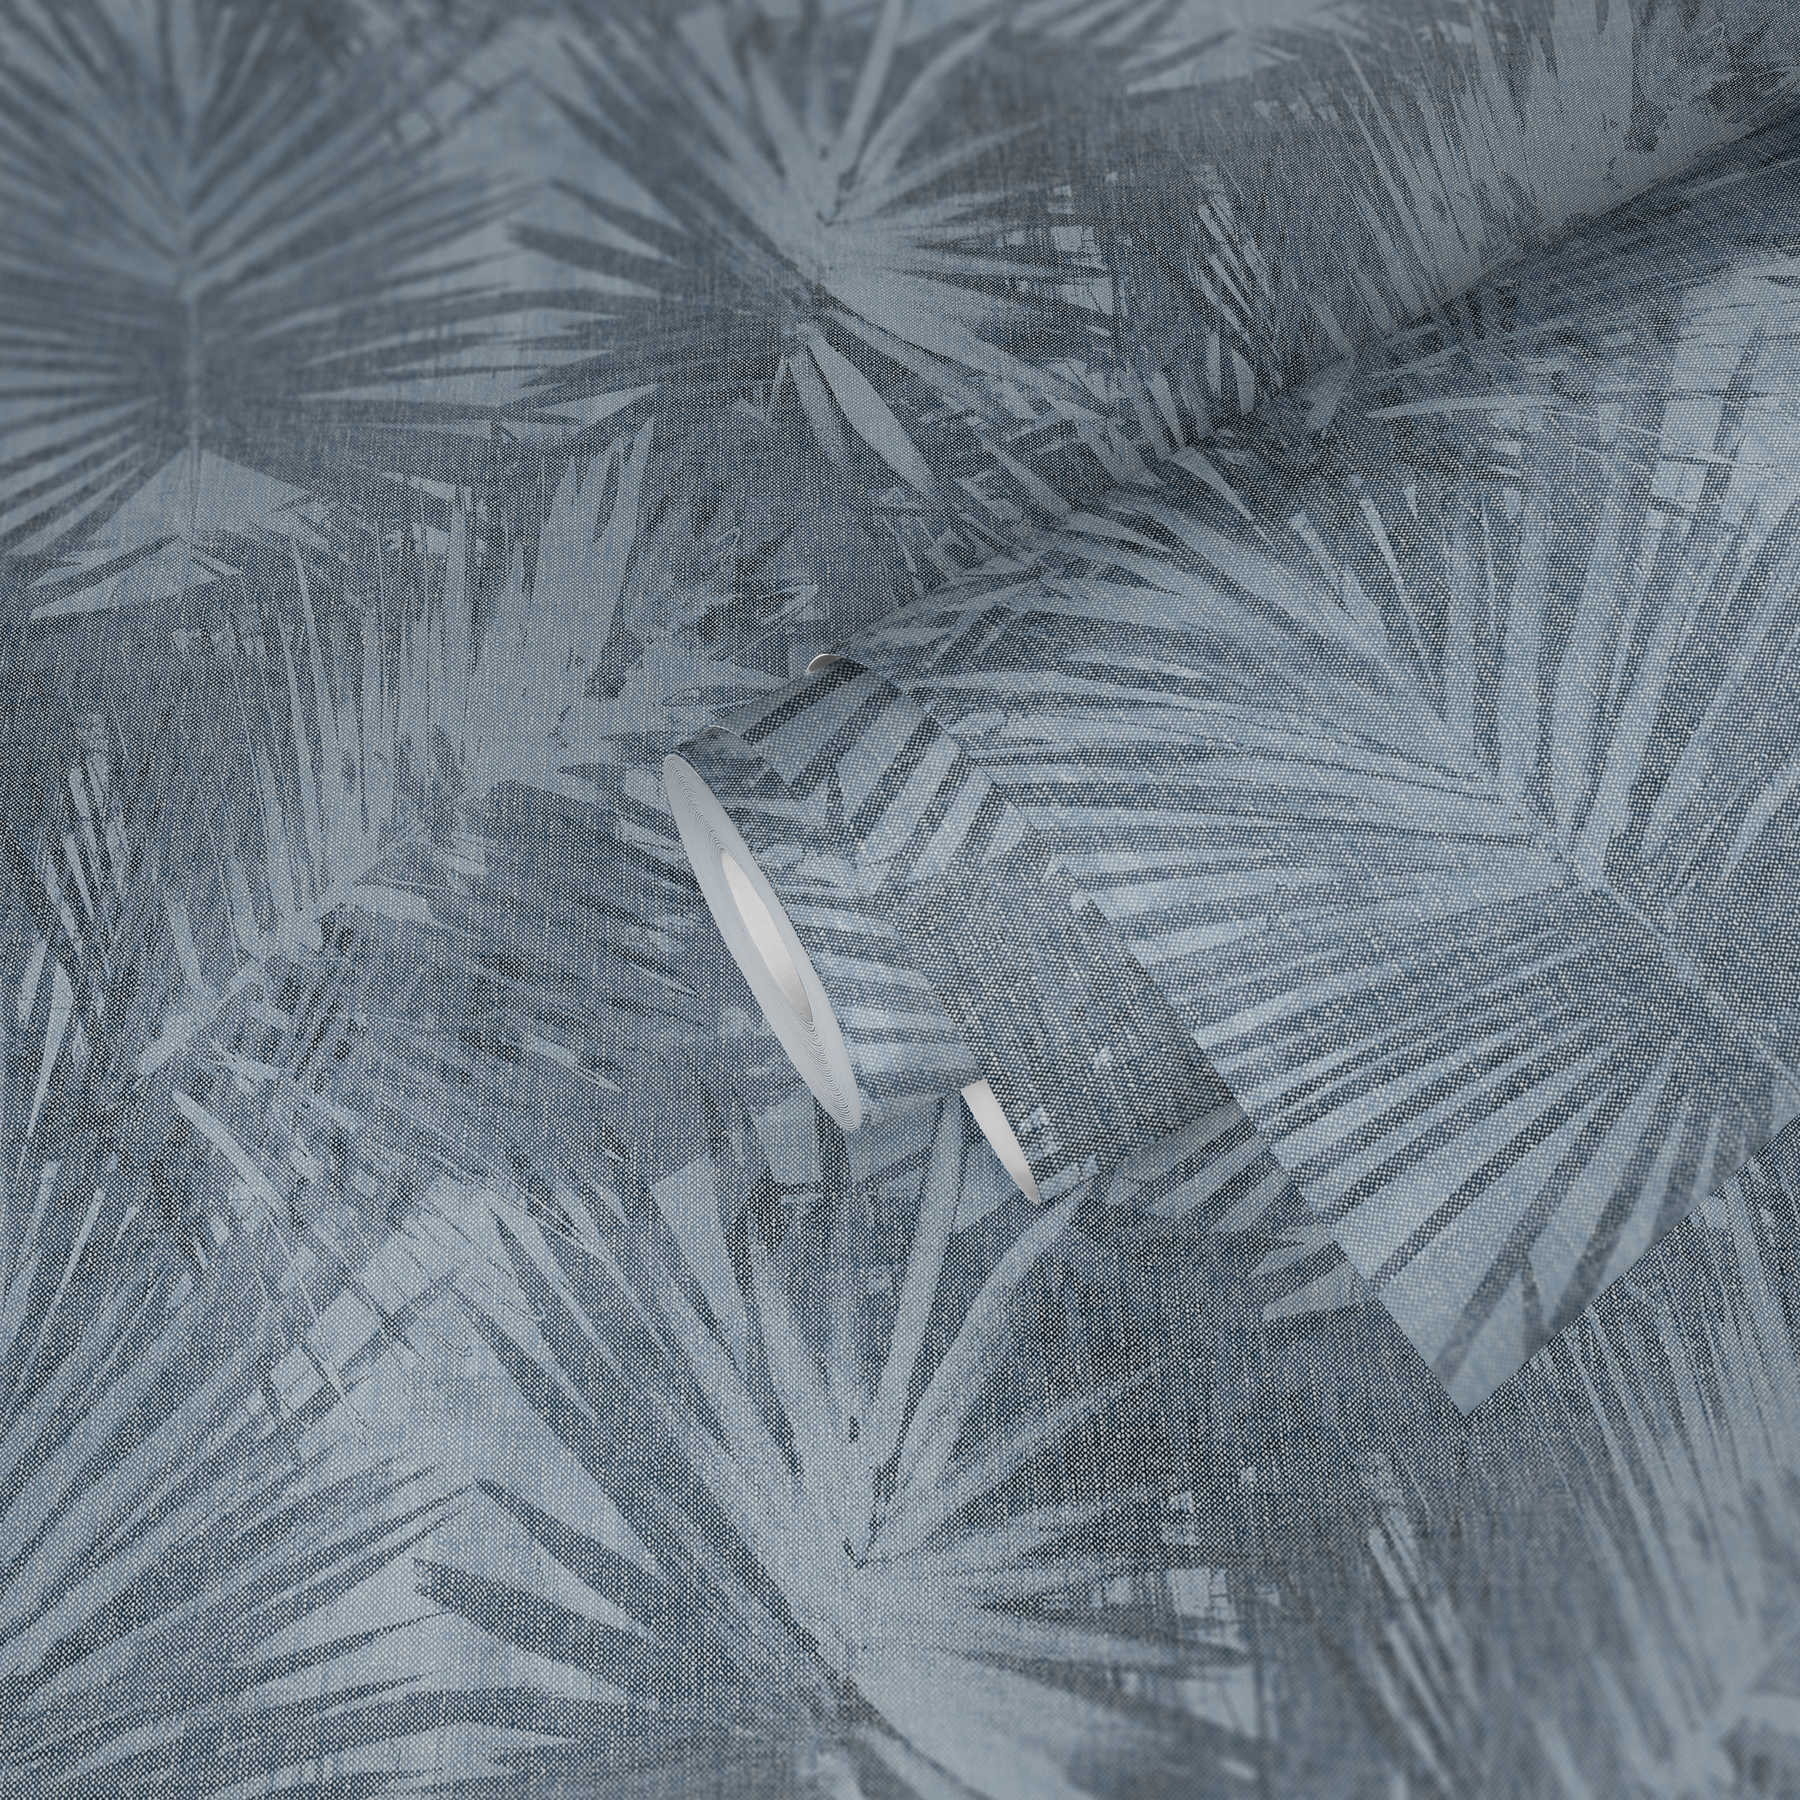             Carta da parati in tessuto non tessuto effetto lino con motivo a foglie naturali - Blu
        